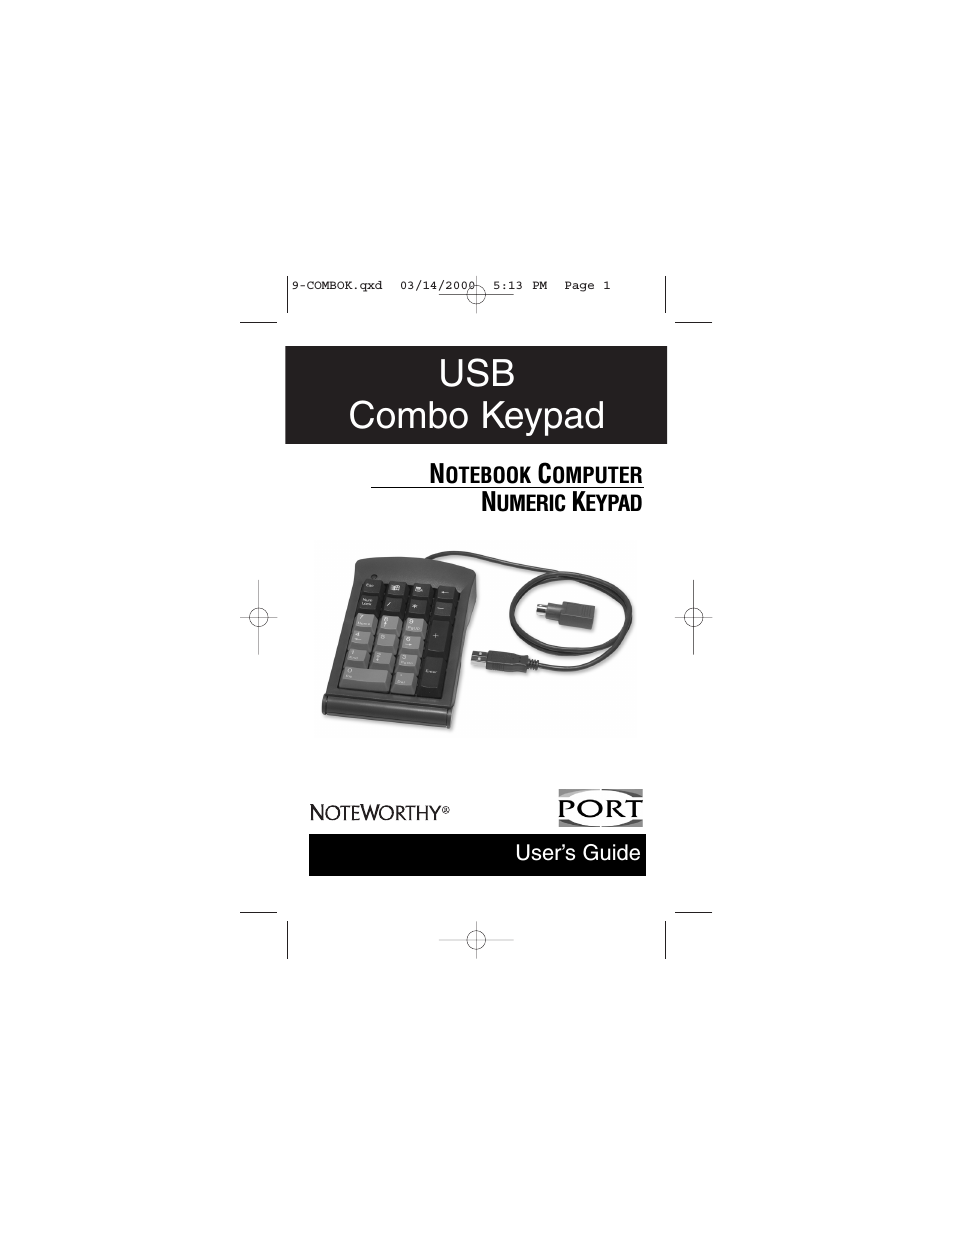 noteworthy usb combo keypad 9-combok.qxd